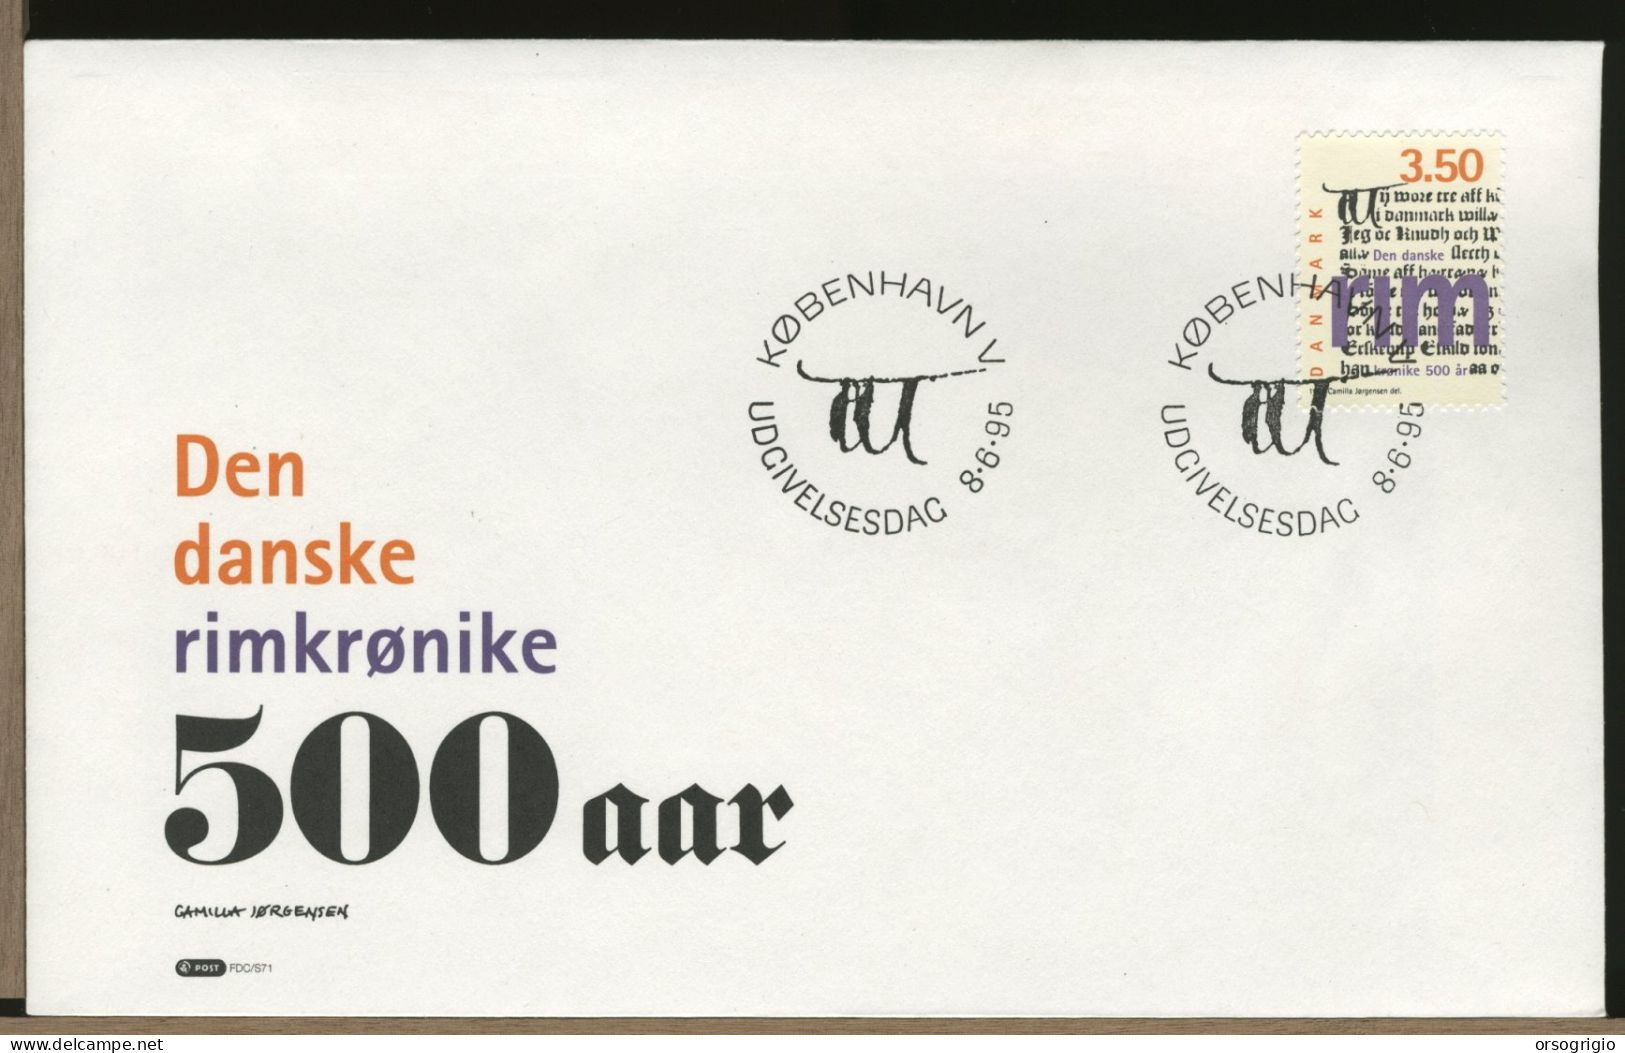 DANIMARCA - DANMARK - FDC 1995   500 Aar - FDC